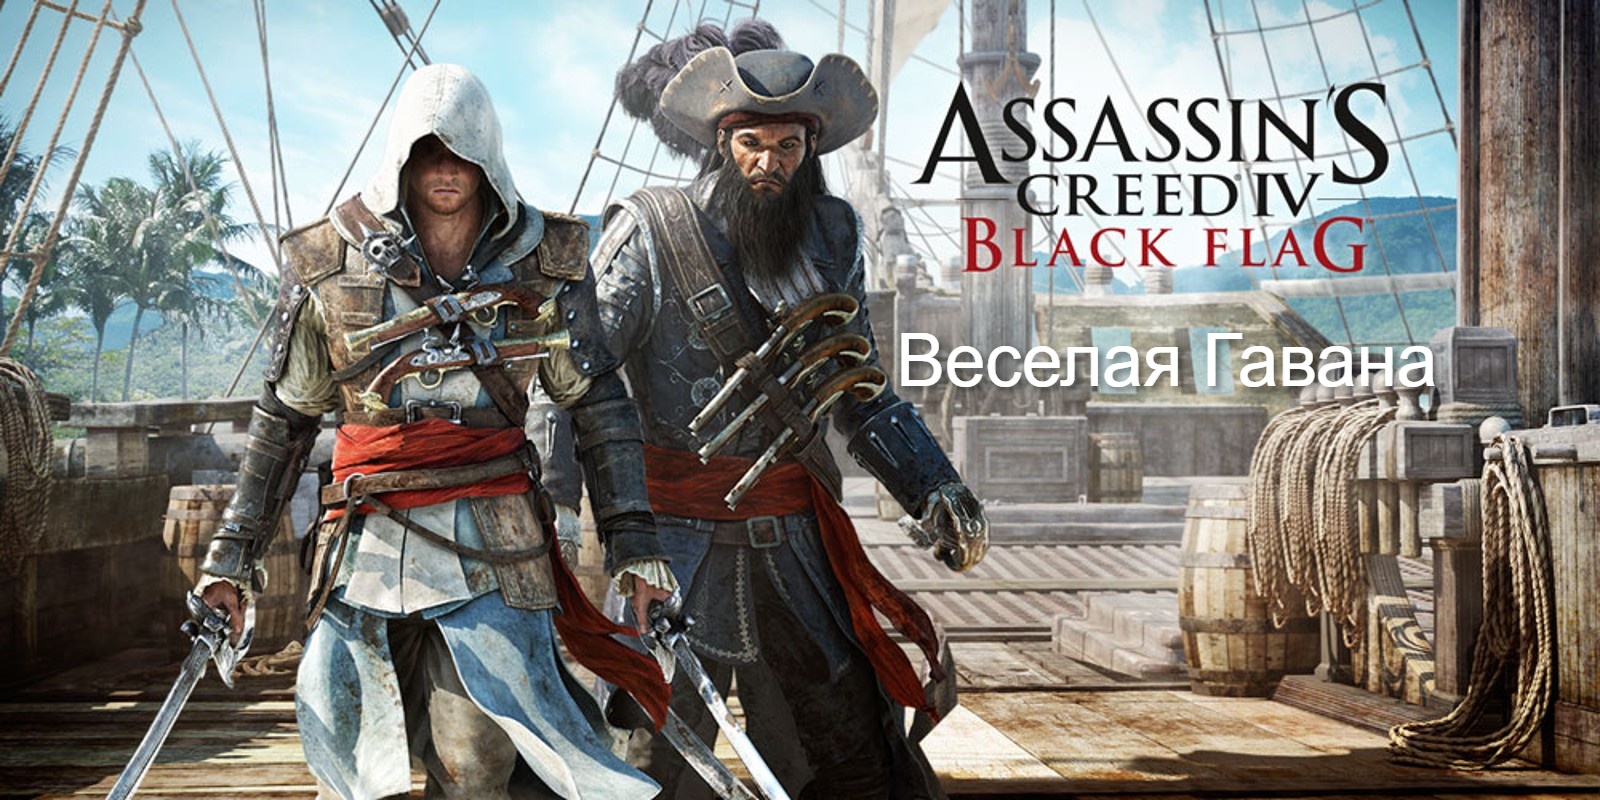 Прохождение Assassin's Creed 4- Black Flag (Чёрный флаг). Веселая Гавана.mp4